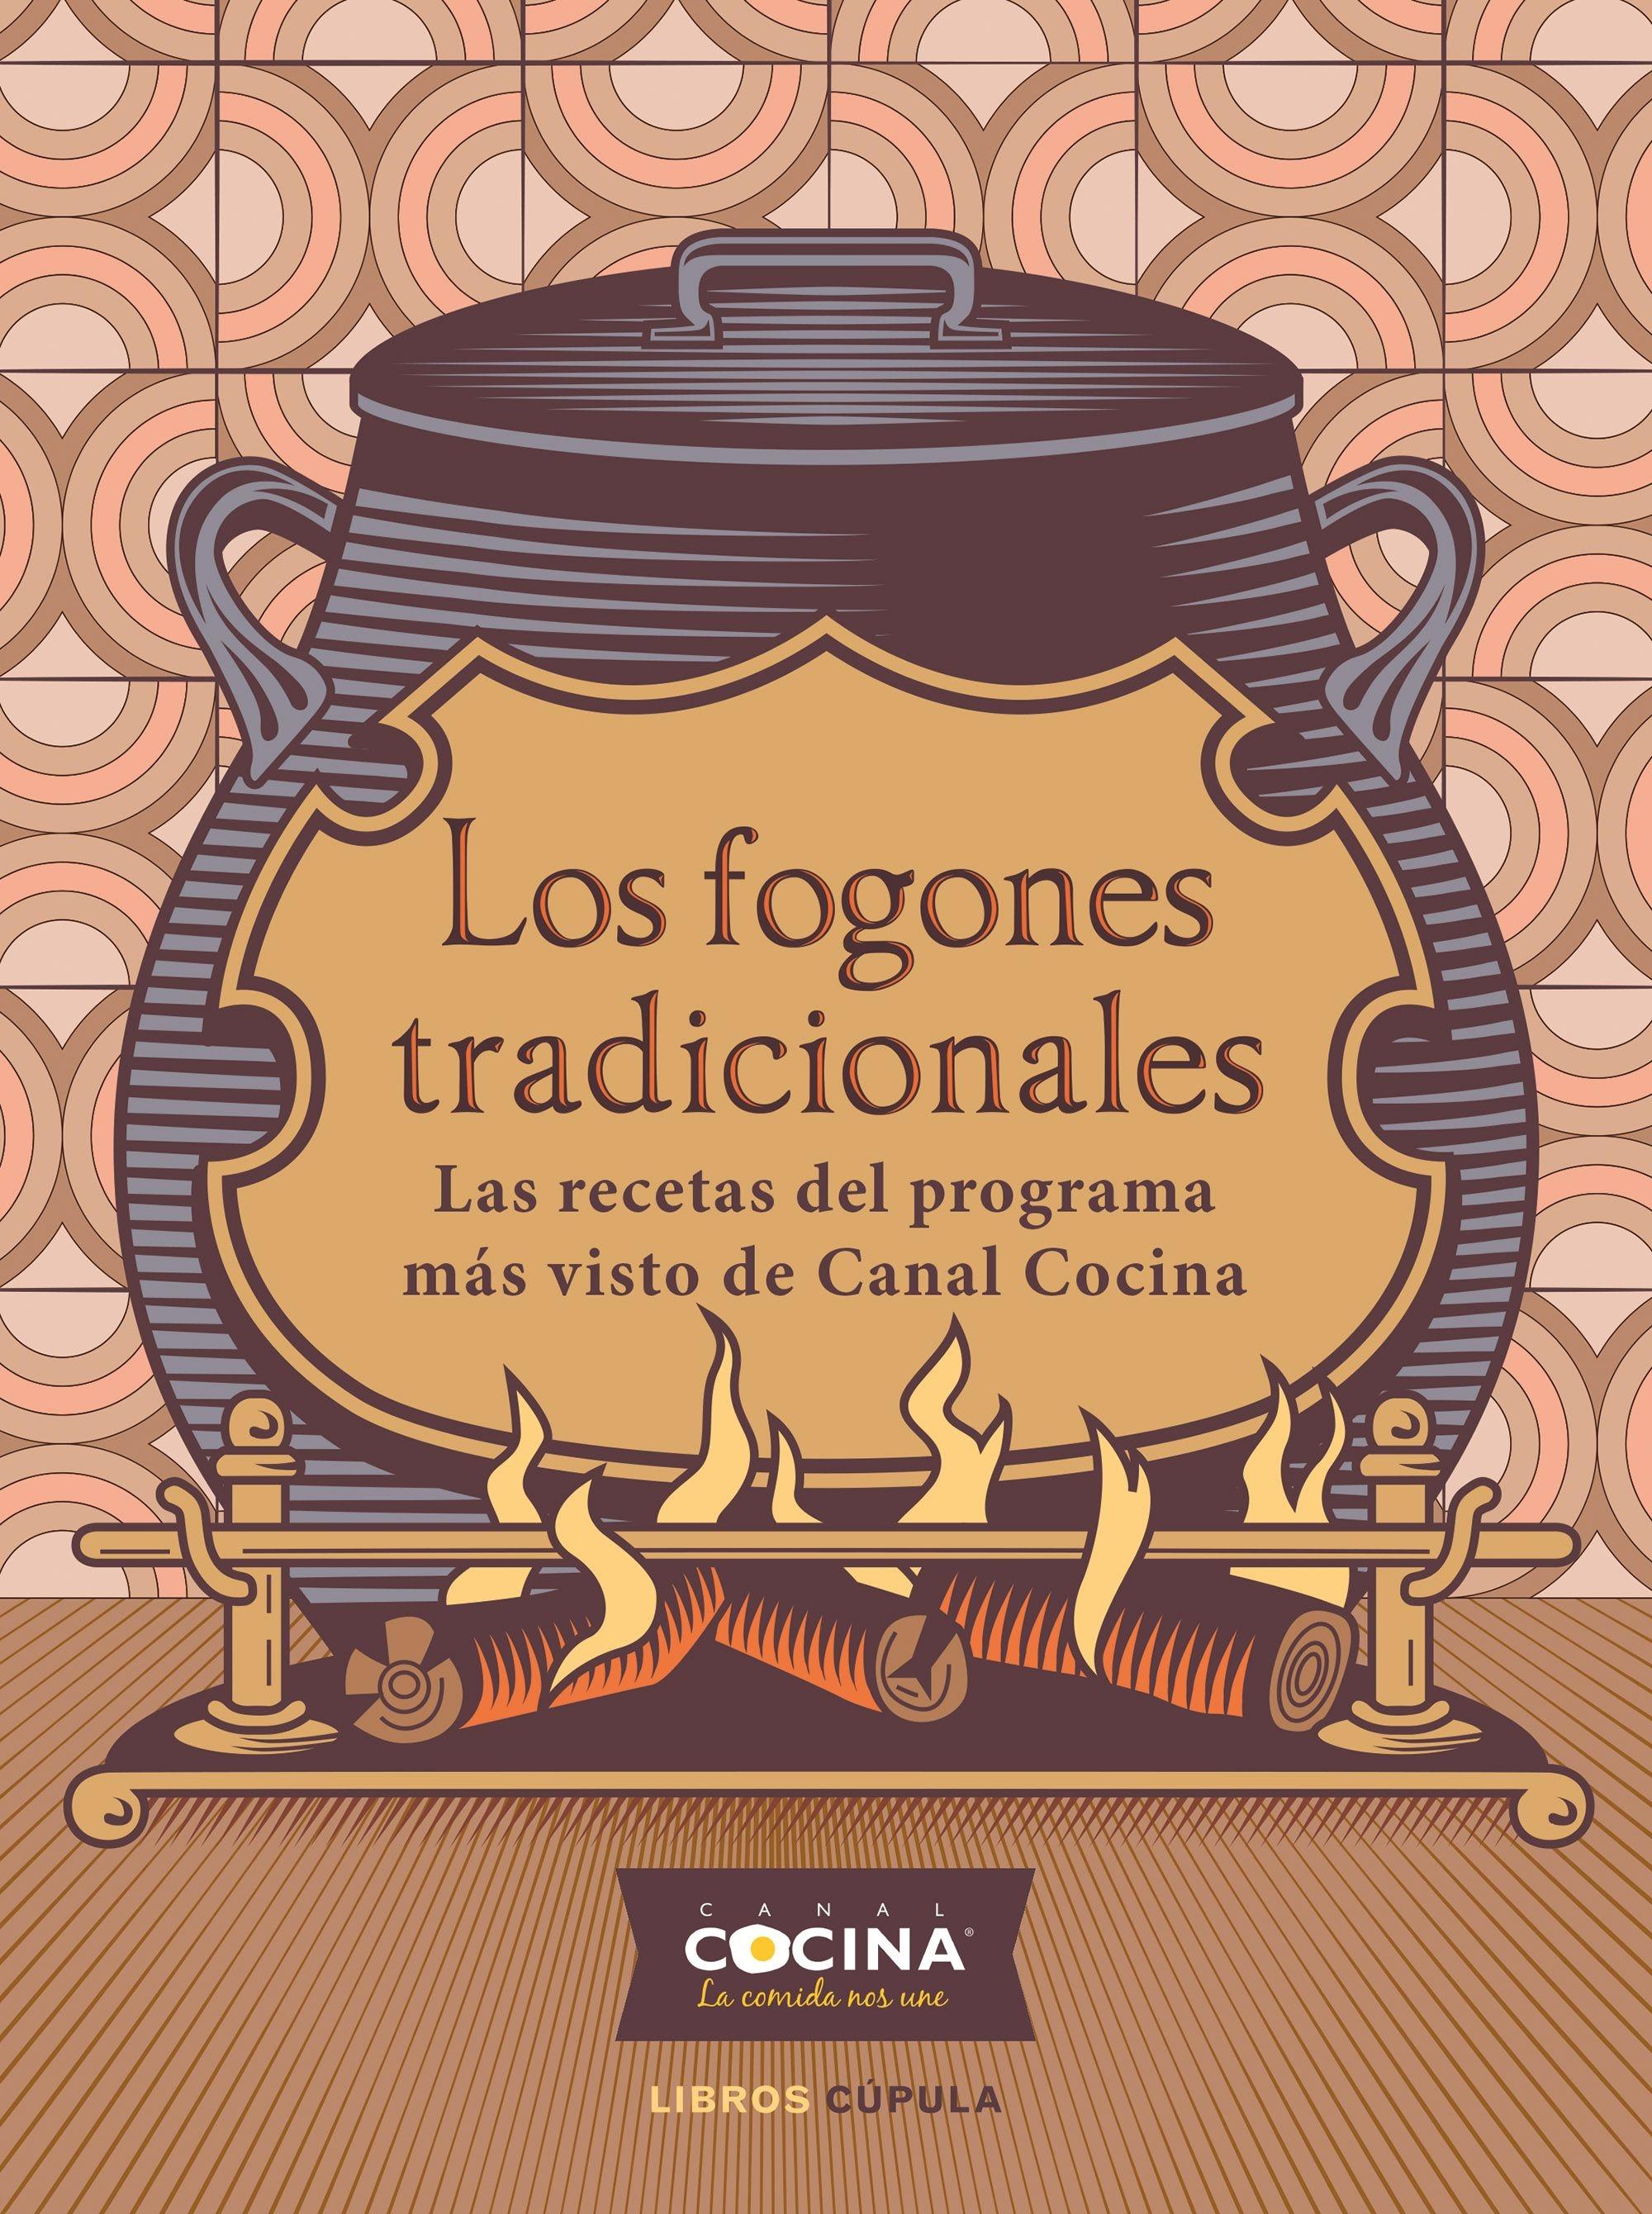 Fogones tradicionales, Los "Las recetas del programa más visto de Canal Cocina"